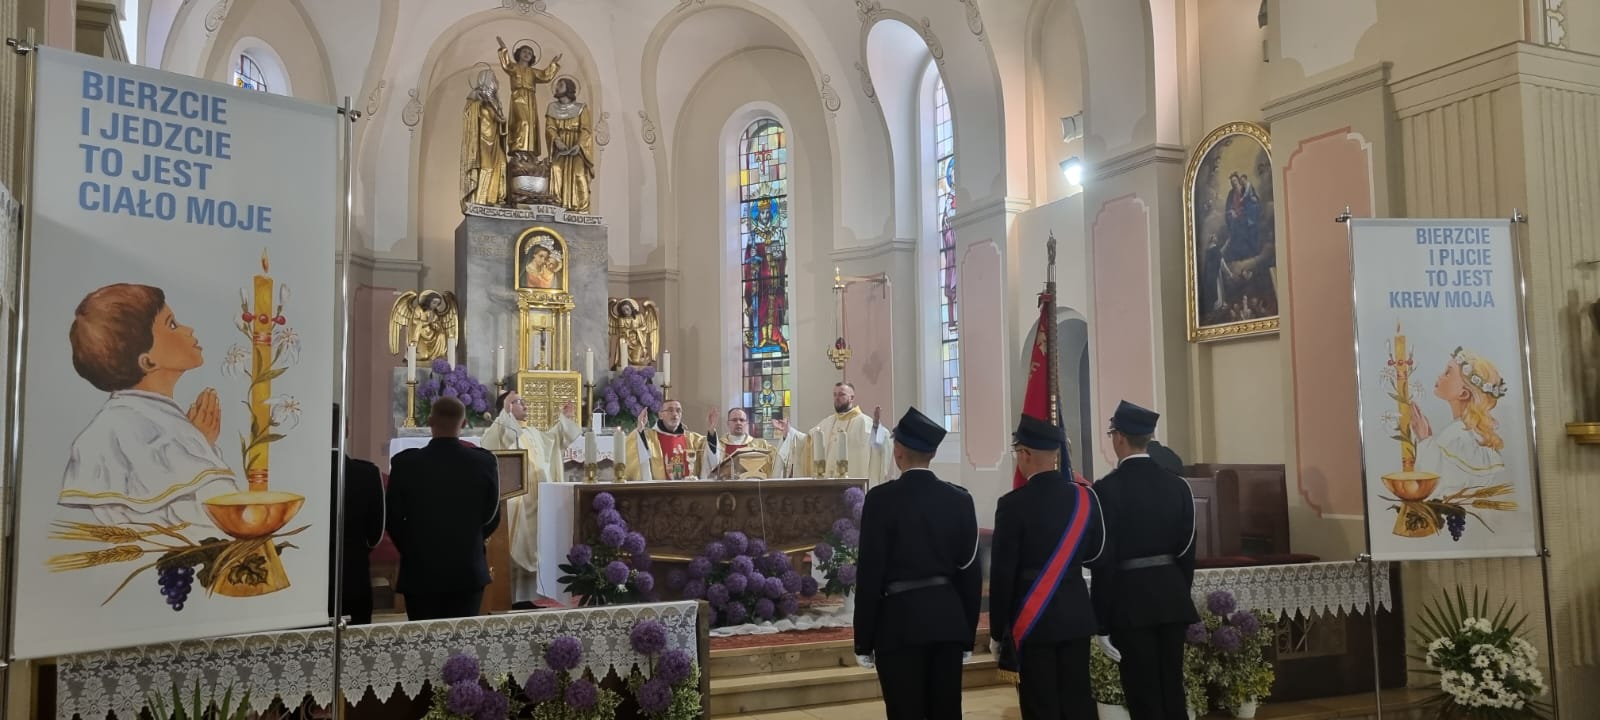 Jubileuszowe uroczystości rozpoczęto od mszy świętej sprawowanej w kościele pw. św. Wita, Modesta i Krescencji